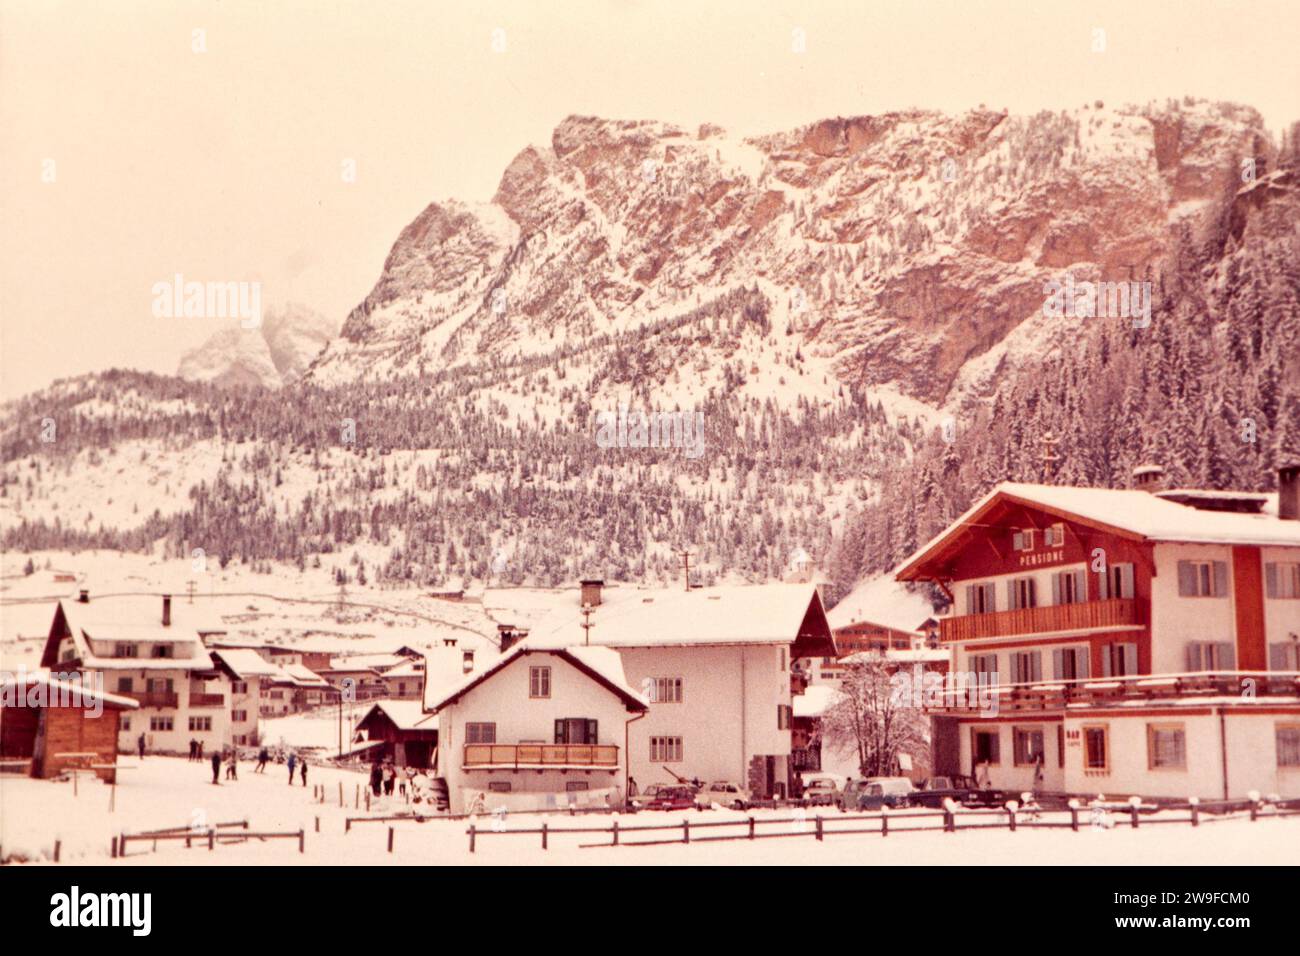 Vista invernale sul paese dell'Alpe di Siusi, alto Adige a metà degli anni sessanta Foto Stock